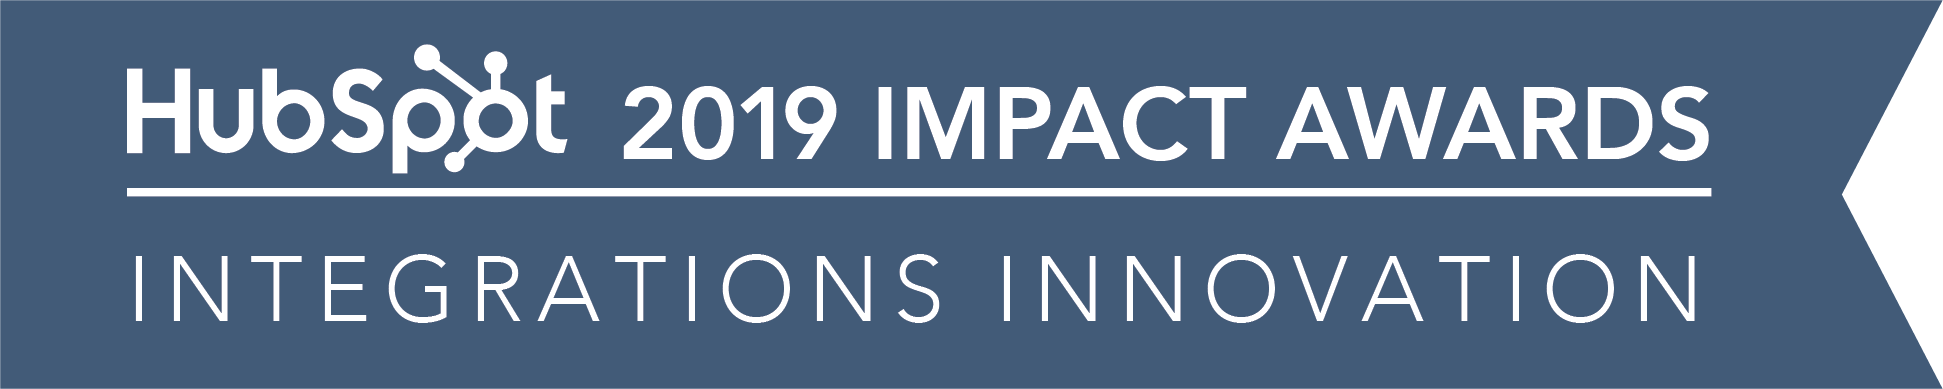 Hubspot_ImpactAwards_2019_IntegrationsInnovation-02 (2)